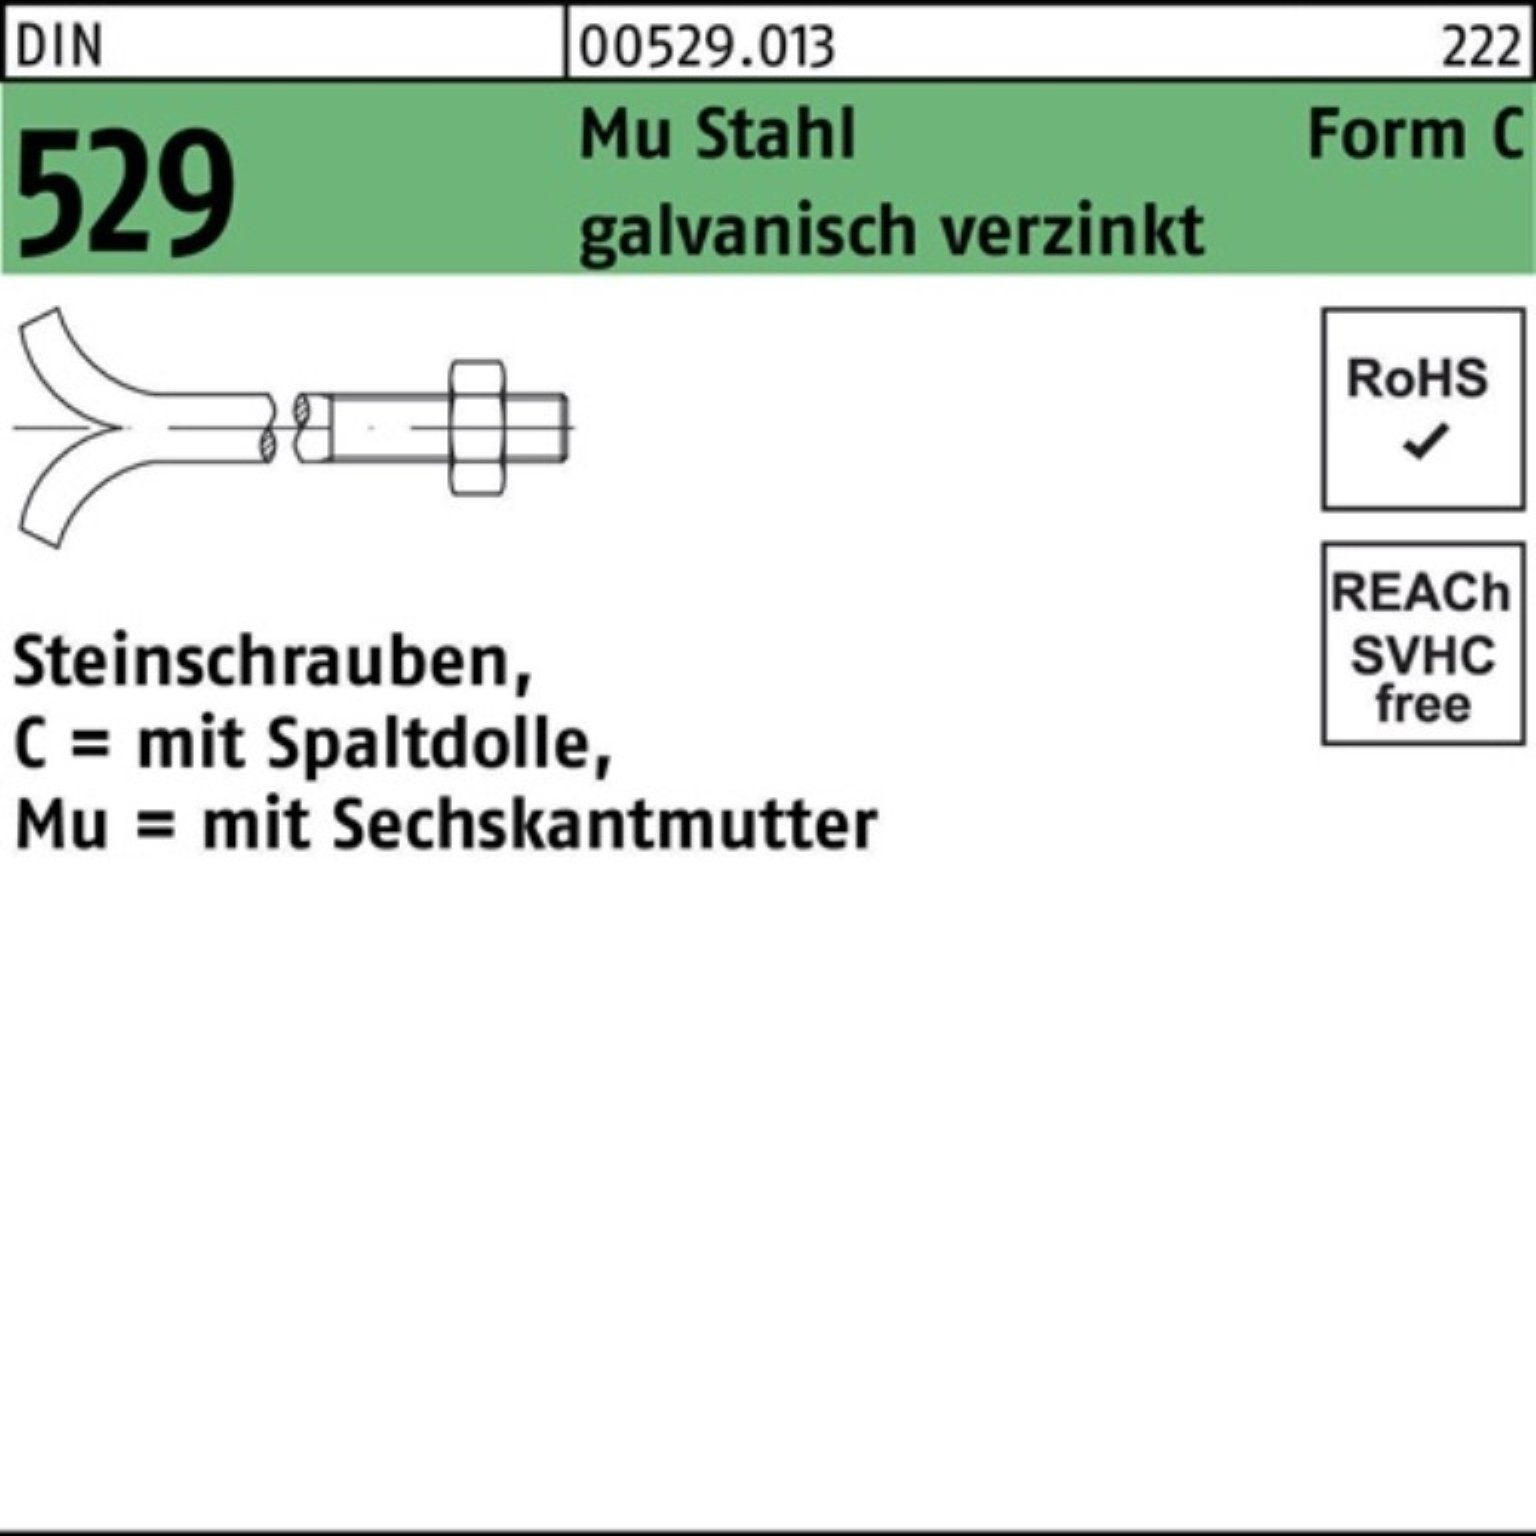 DIN Steinschraube Schraube CM Pack 529 Mu 3. 100er 20x160 Reyher Spaltdolle/6-ktmutter